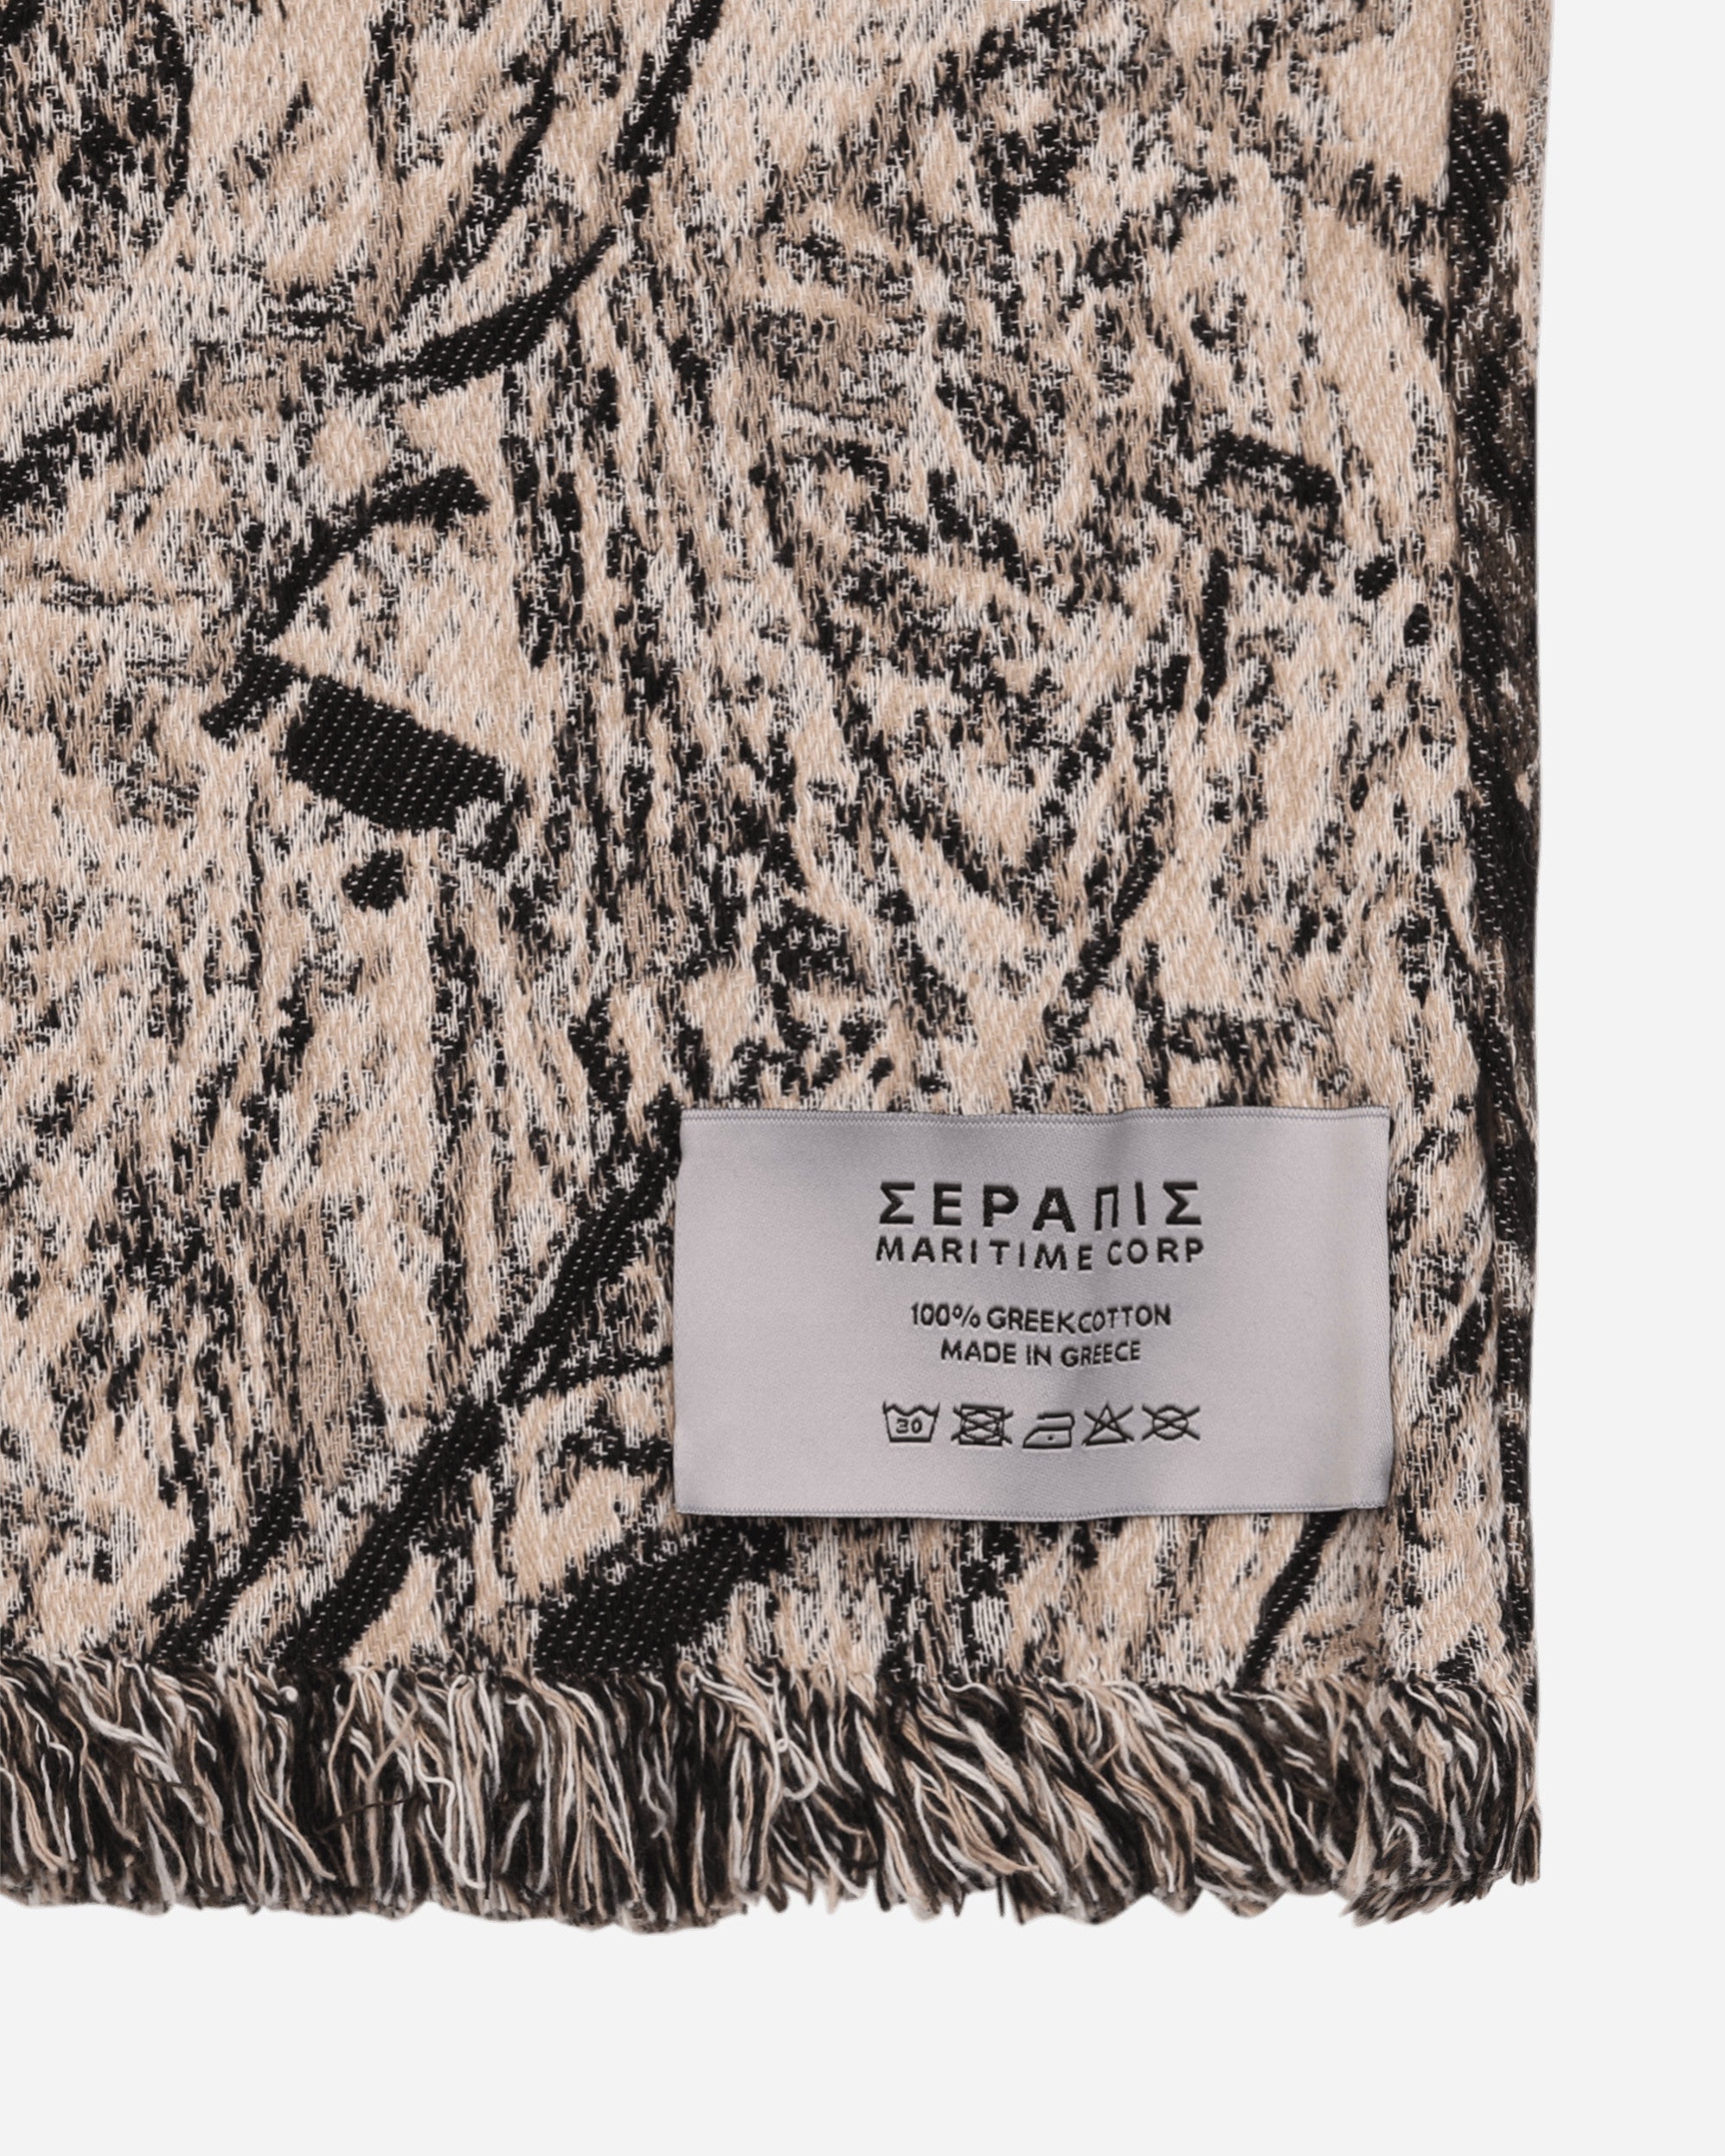 Serapis Dirt Blanket Brown Homeware Design Items HW2-BL-3  003